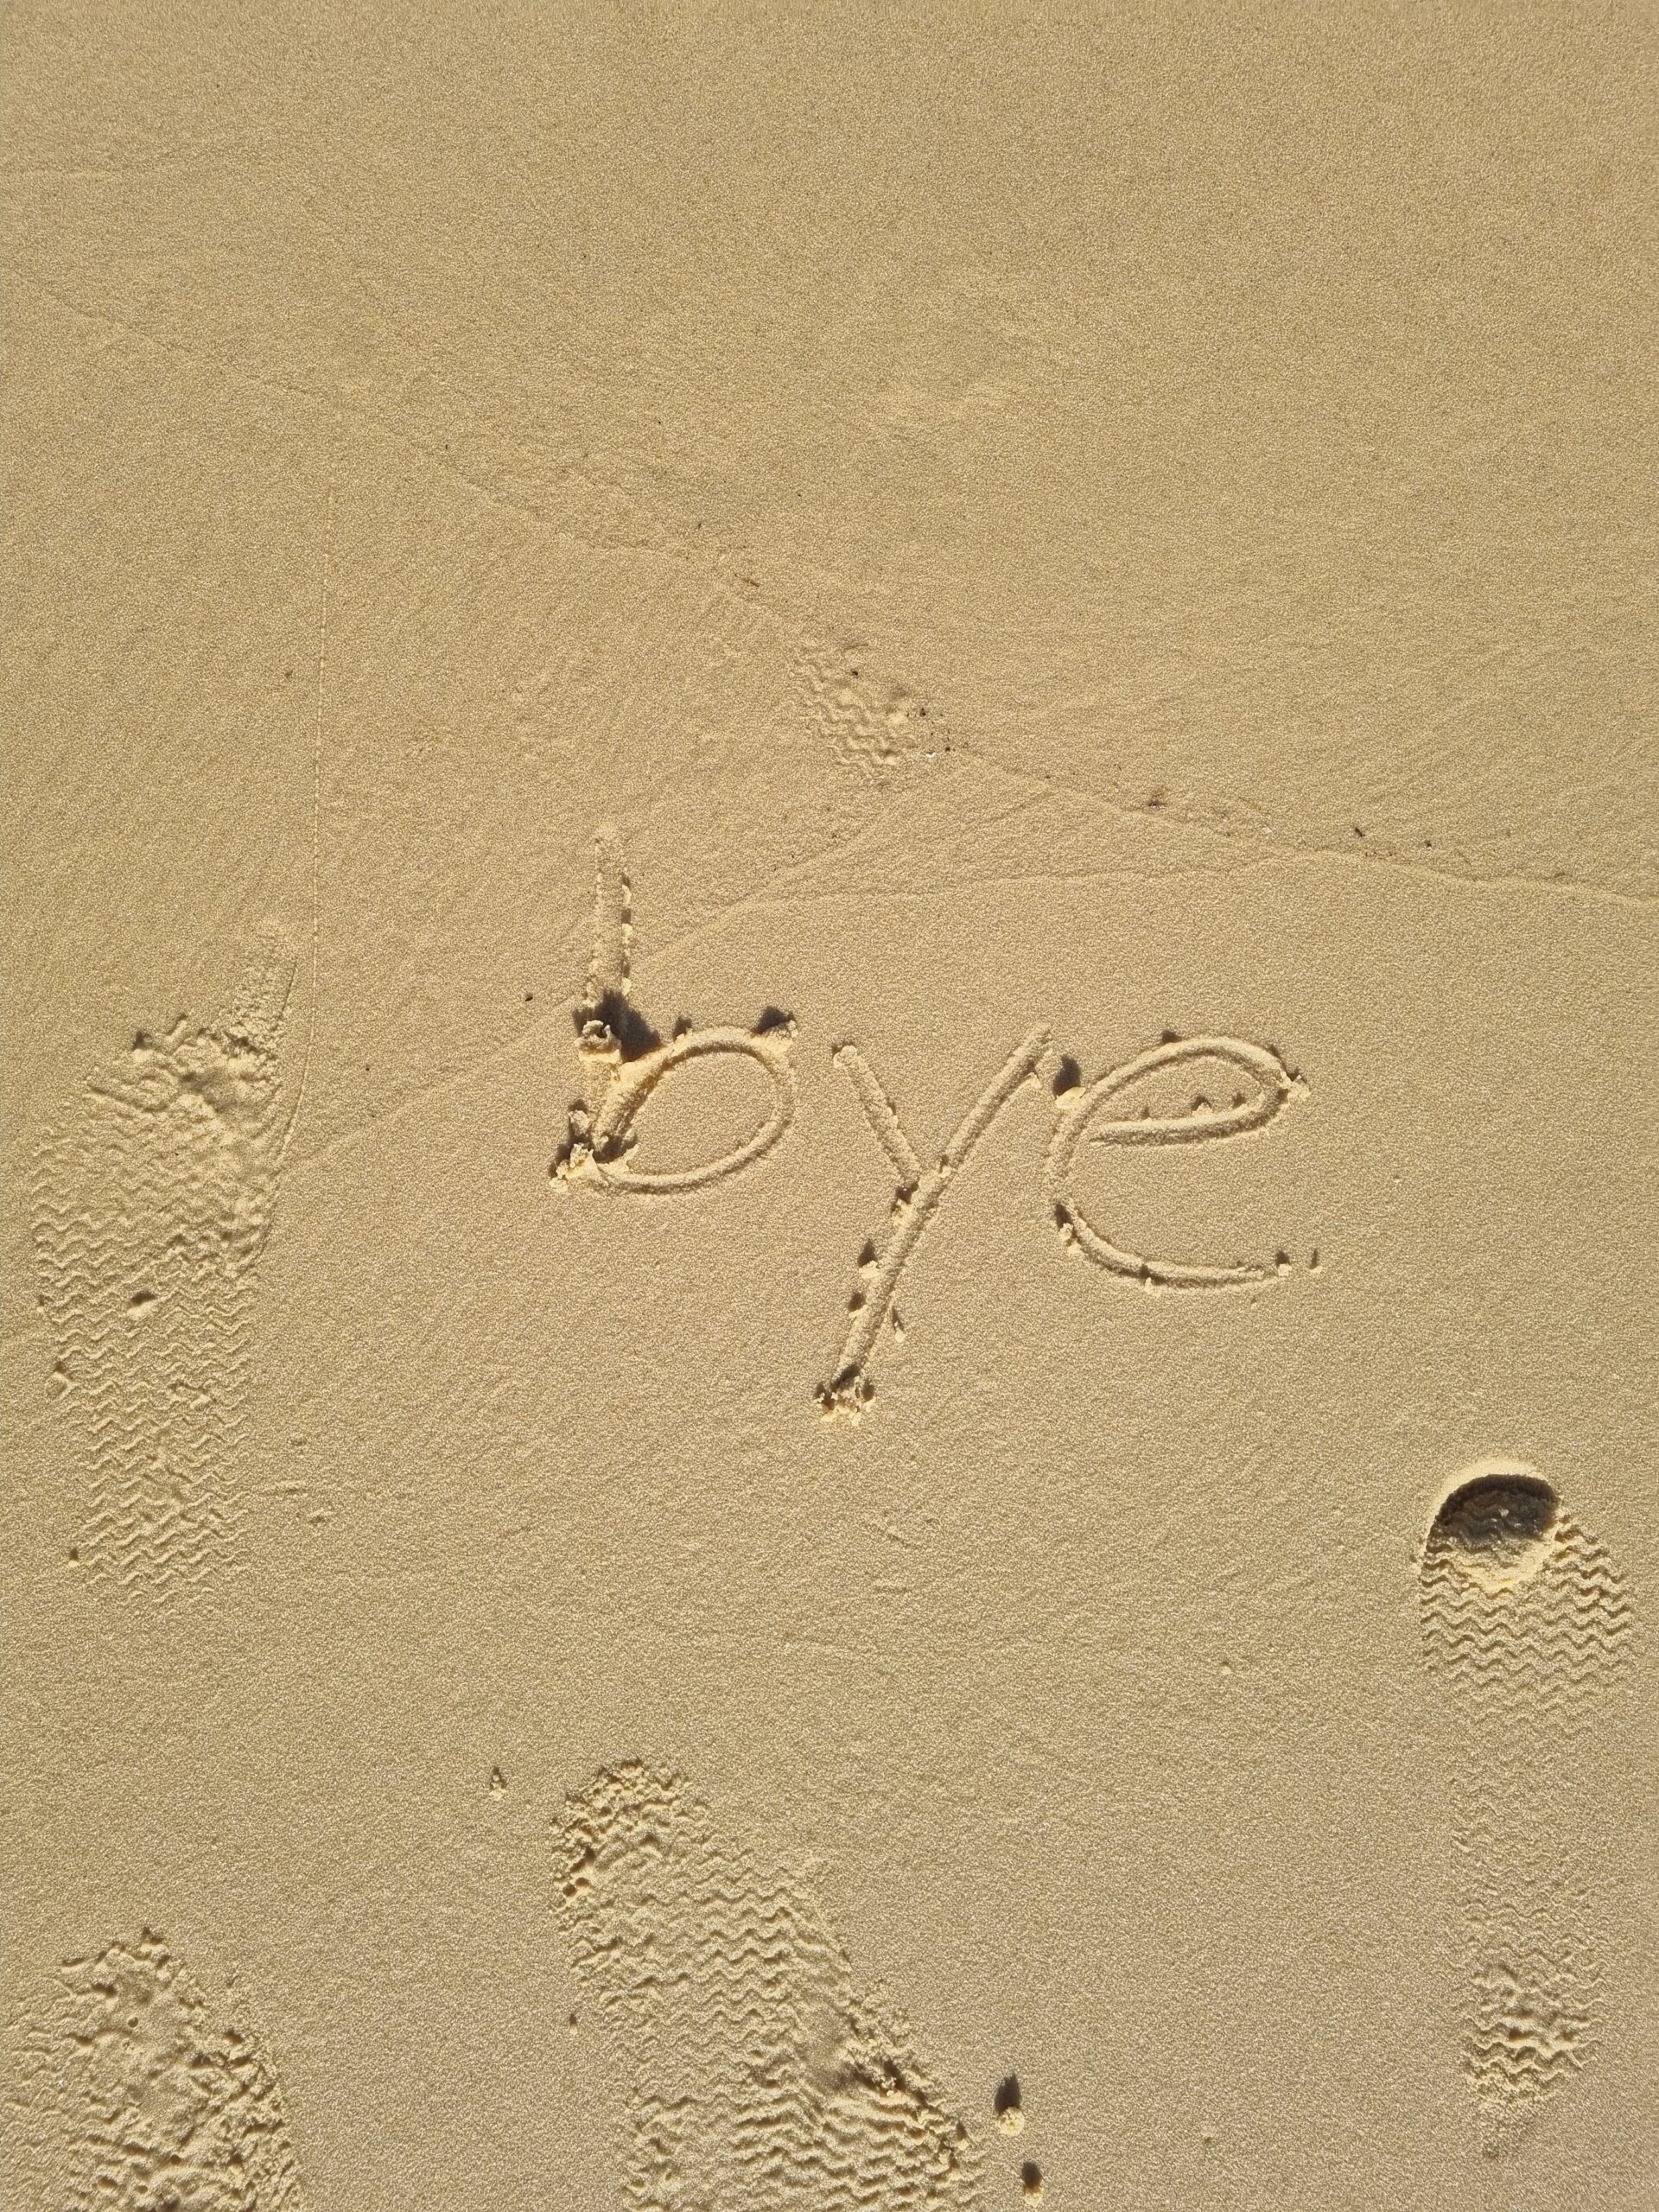 word 'bye' written in sand on beach